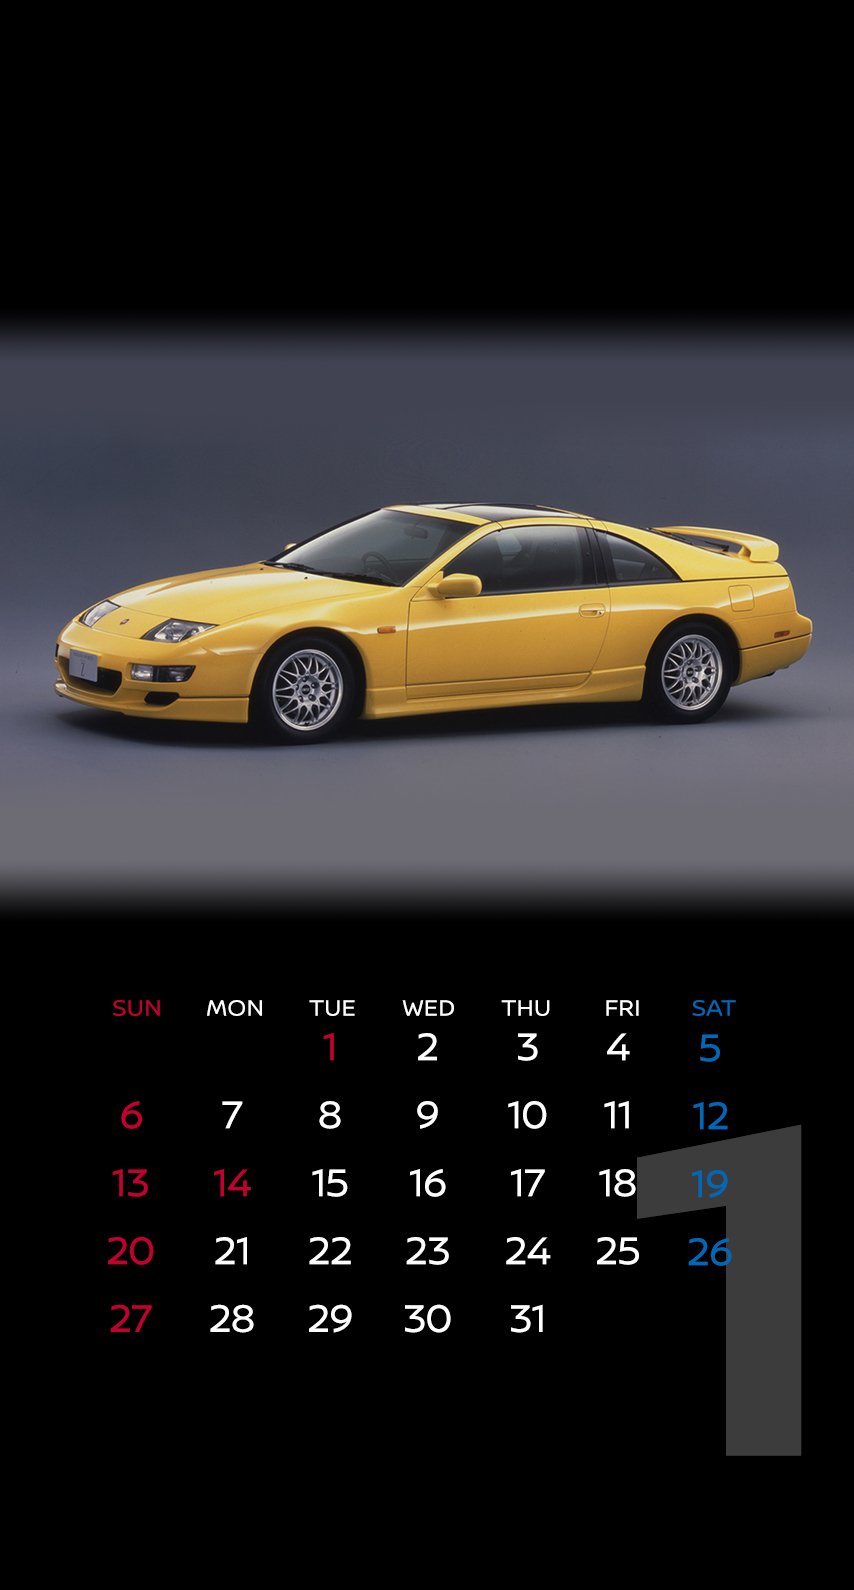 Twitter இல 日産自動車株式会社 壁紙カレンダー 19年1月は Nissangtr フェアレディz Z32型 スカイライン C10型 の3車種 T Co T0auwkwmop 皆さんにとって19年も素晴らしい年になるよう願っております １年間お世話になりました